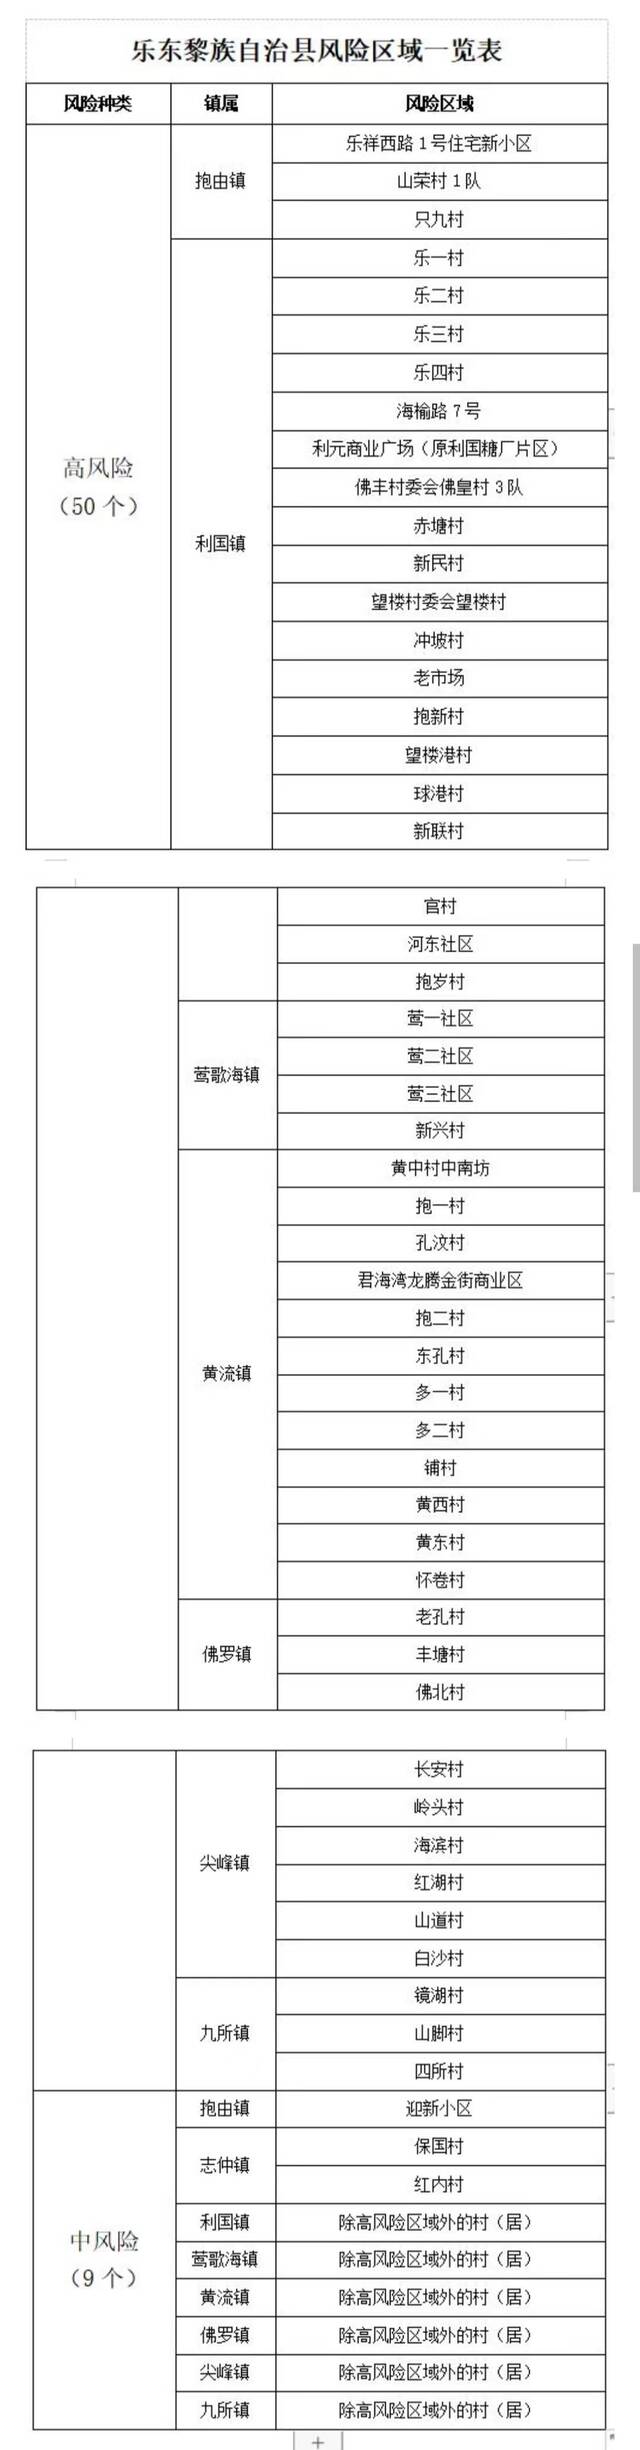 海南乐东县高风险区调整为50个 中风险区调整为9个